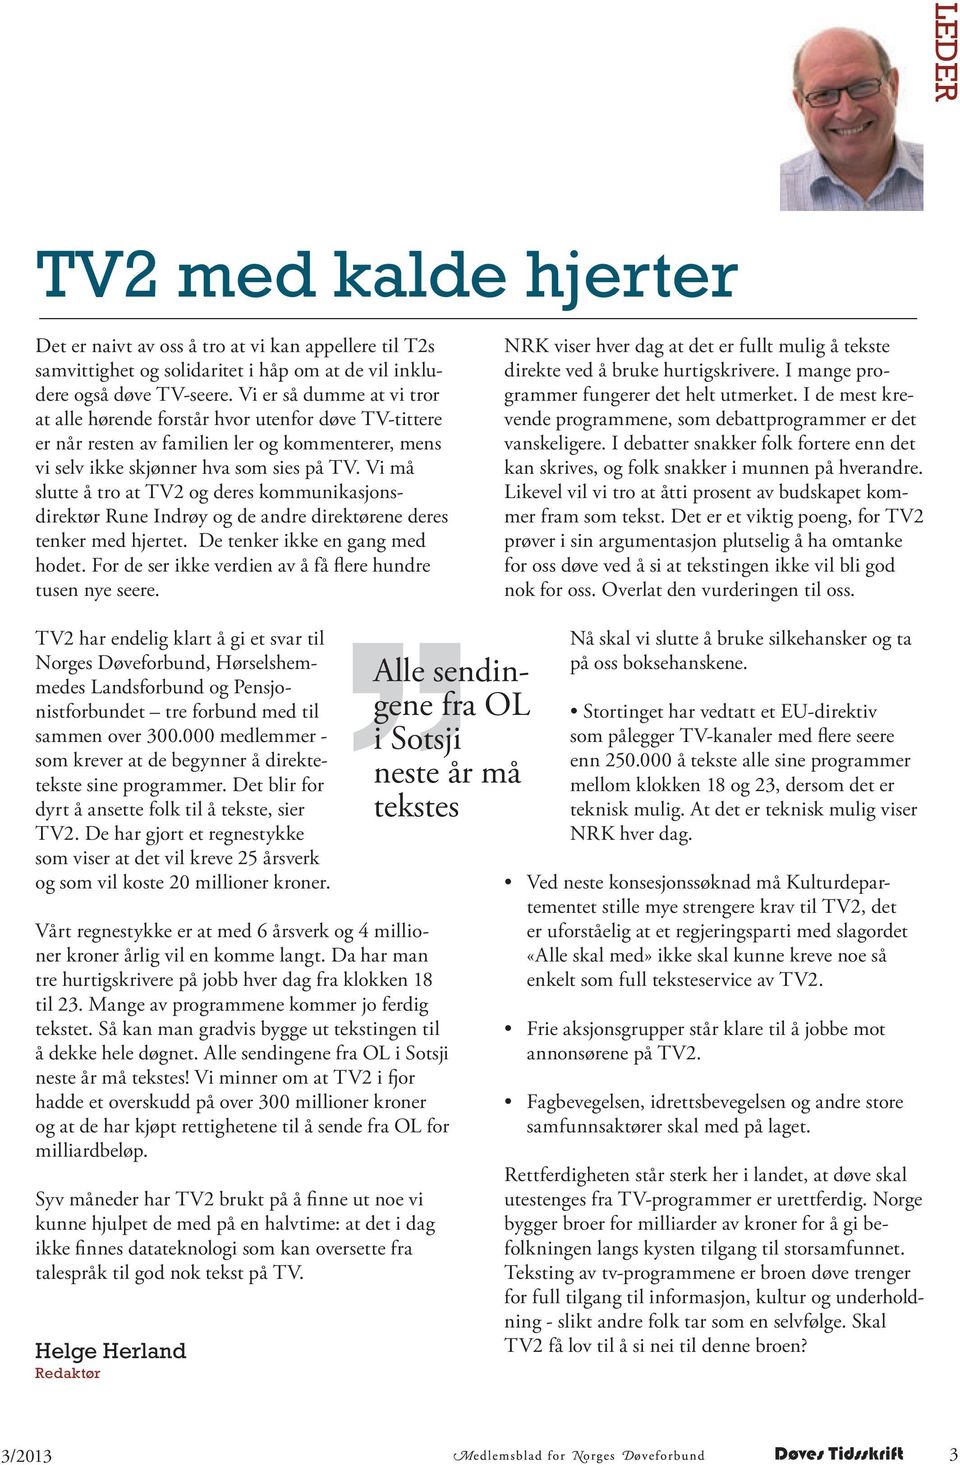 Vi må slutte å tro at TV2 og deres kommunikasjonsdirektør Rune Indrøy og de andre direktørene deres tenker med hjertet. De tenker ikke en gang med hodet.